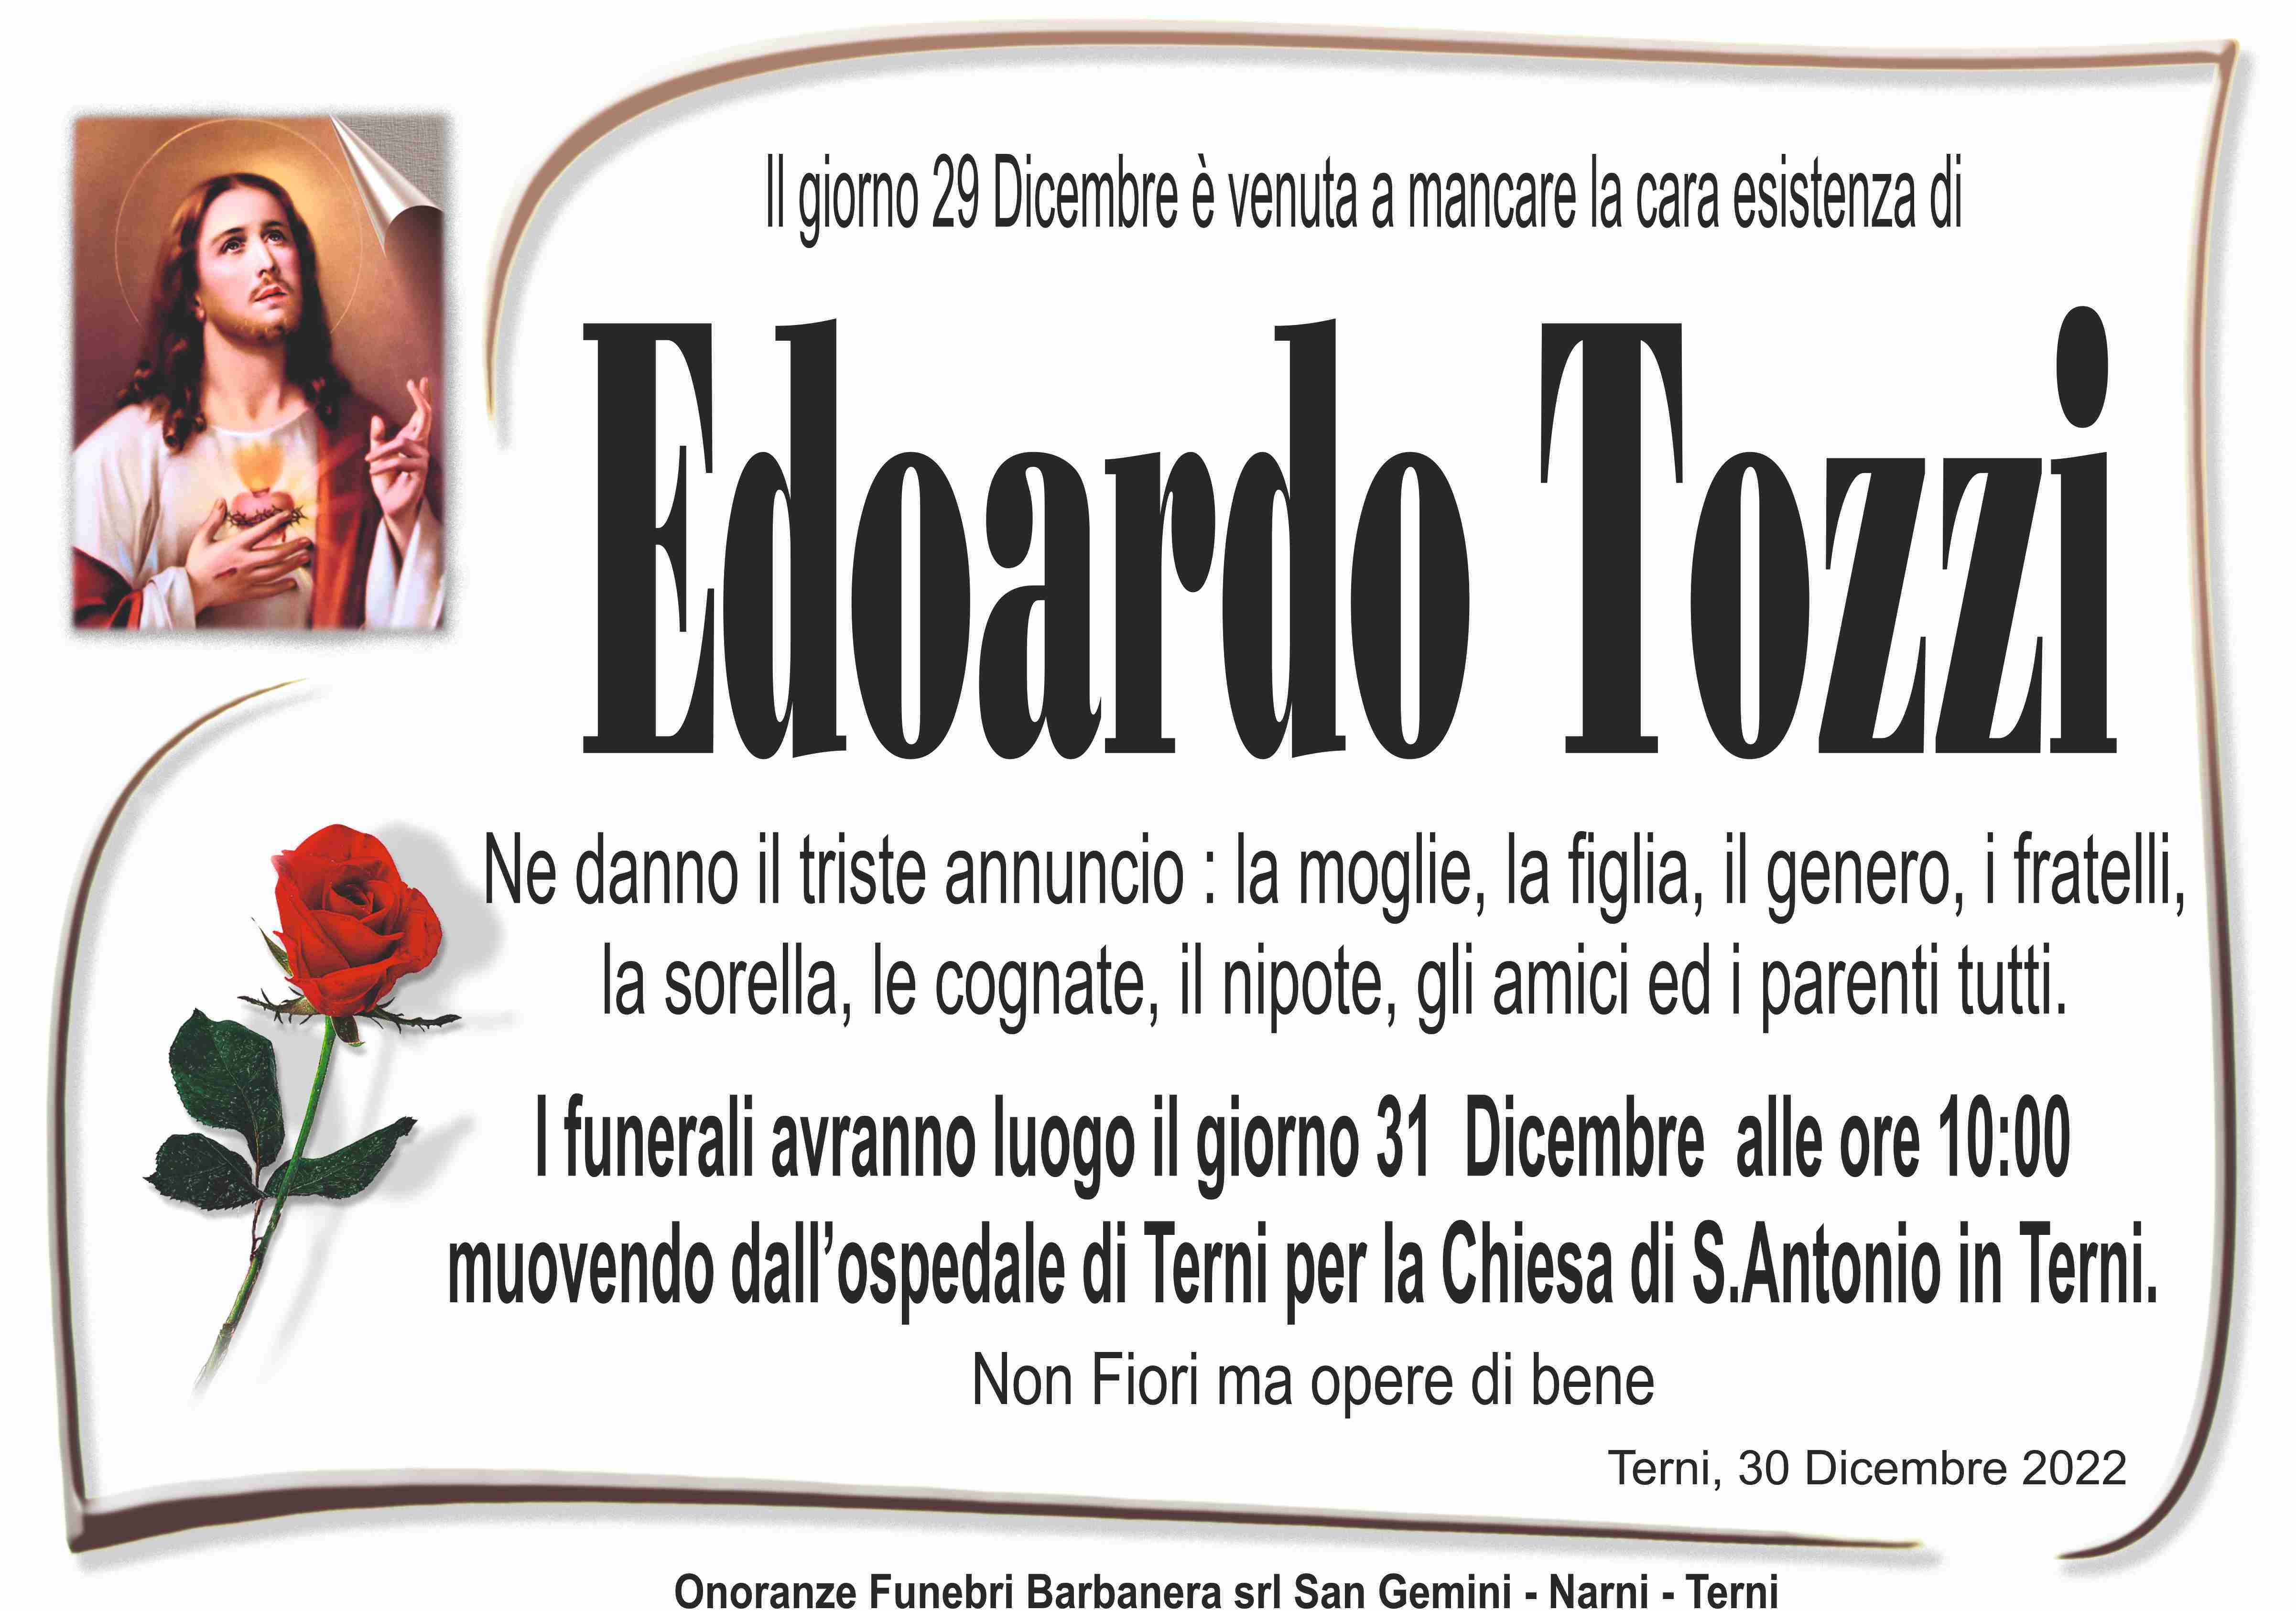 Edoardo Tozzi